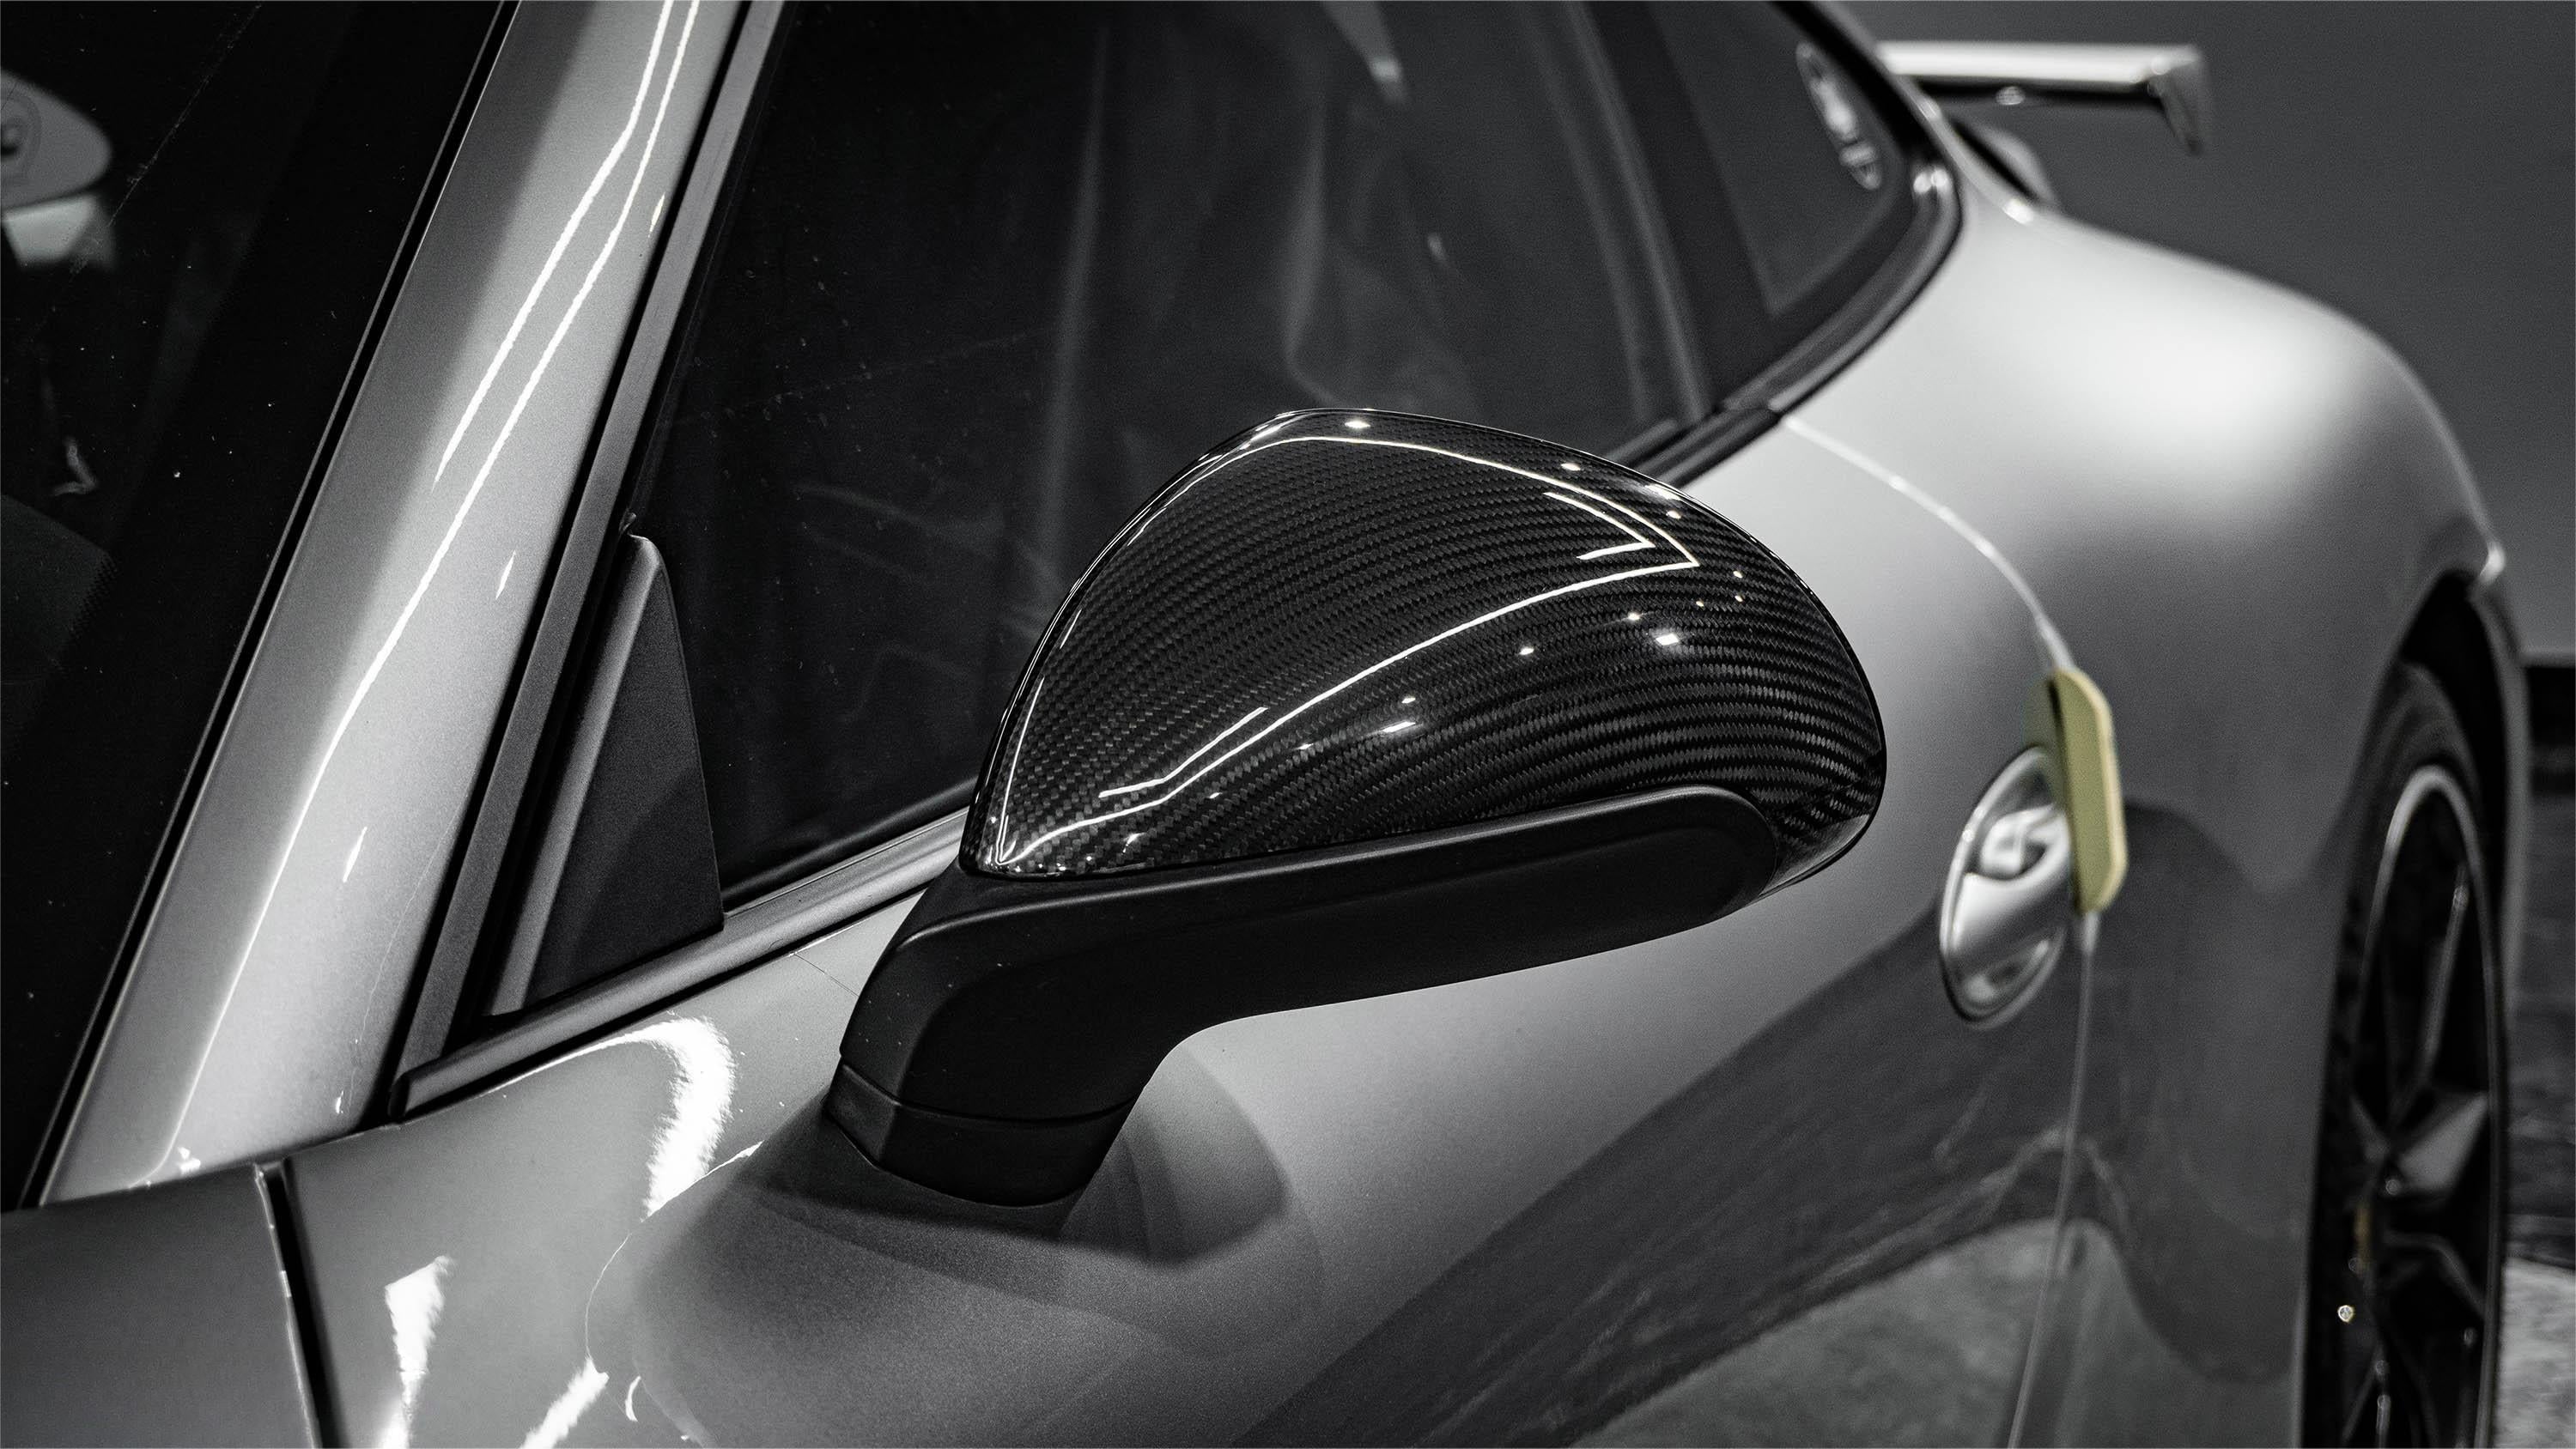 Aero Republic Carbon Fiber Mirror Cover Replacement for Porsche 911 991.1 991.2 Carrera / S / Turbo